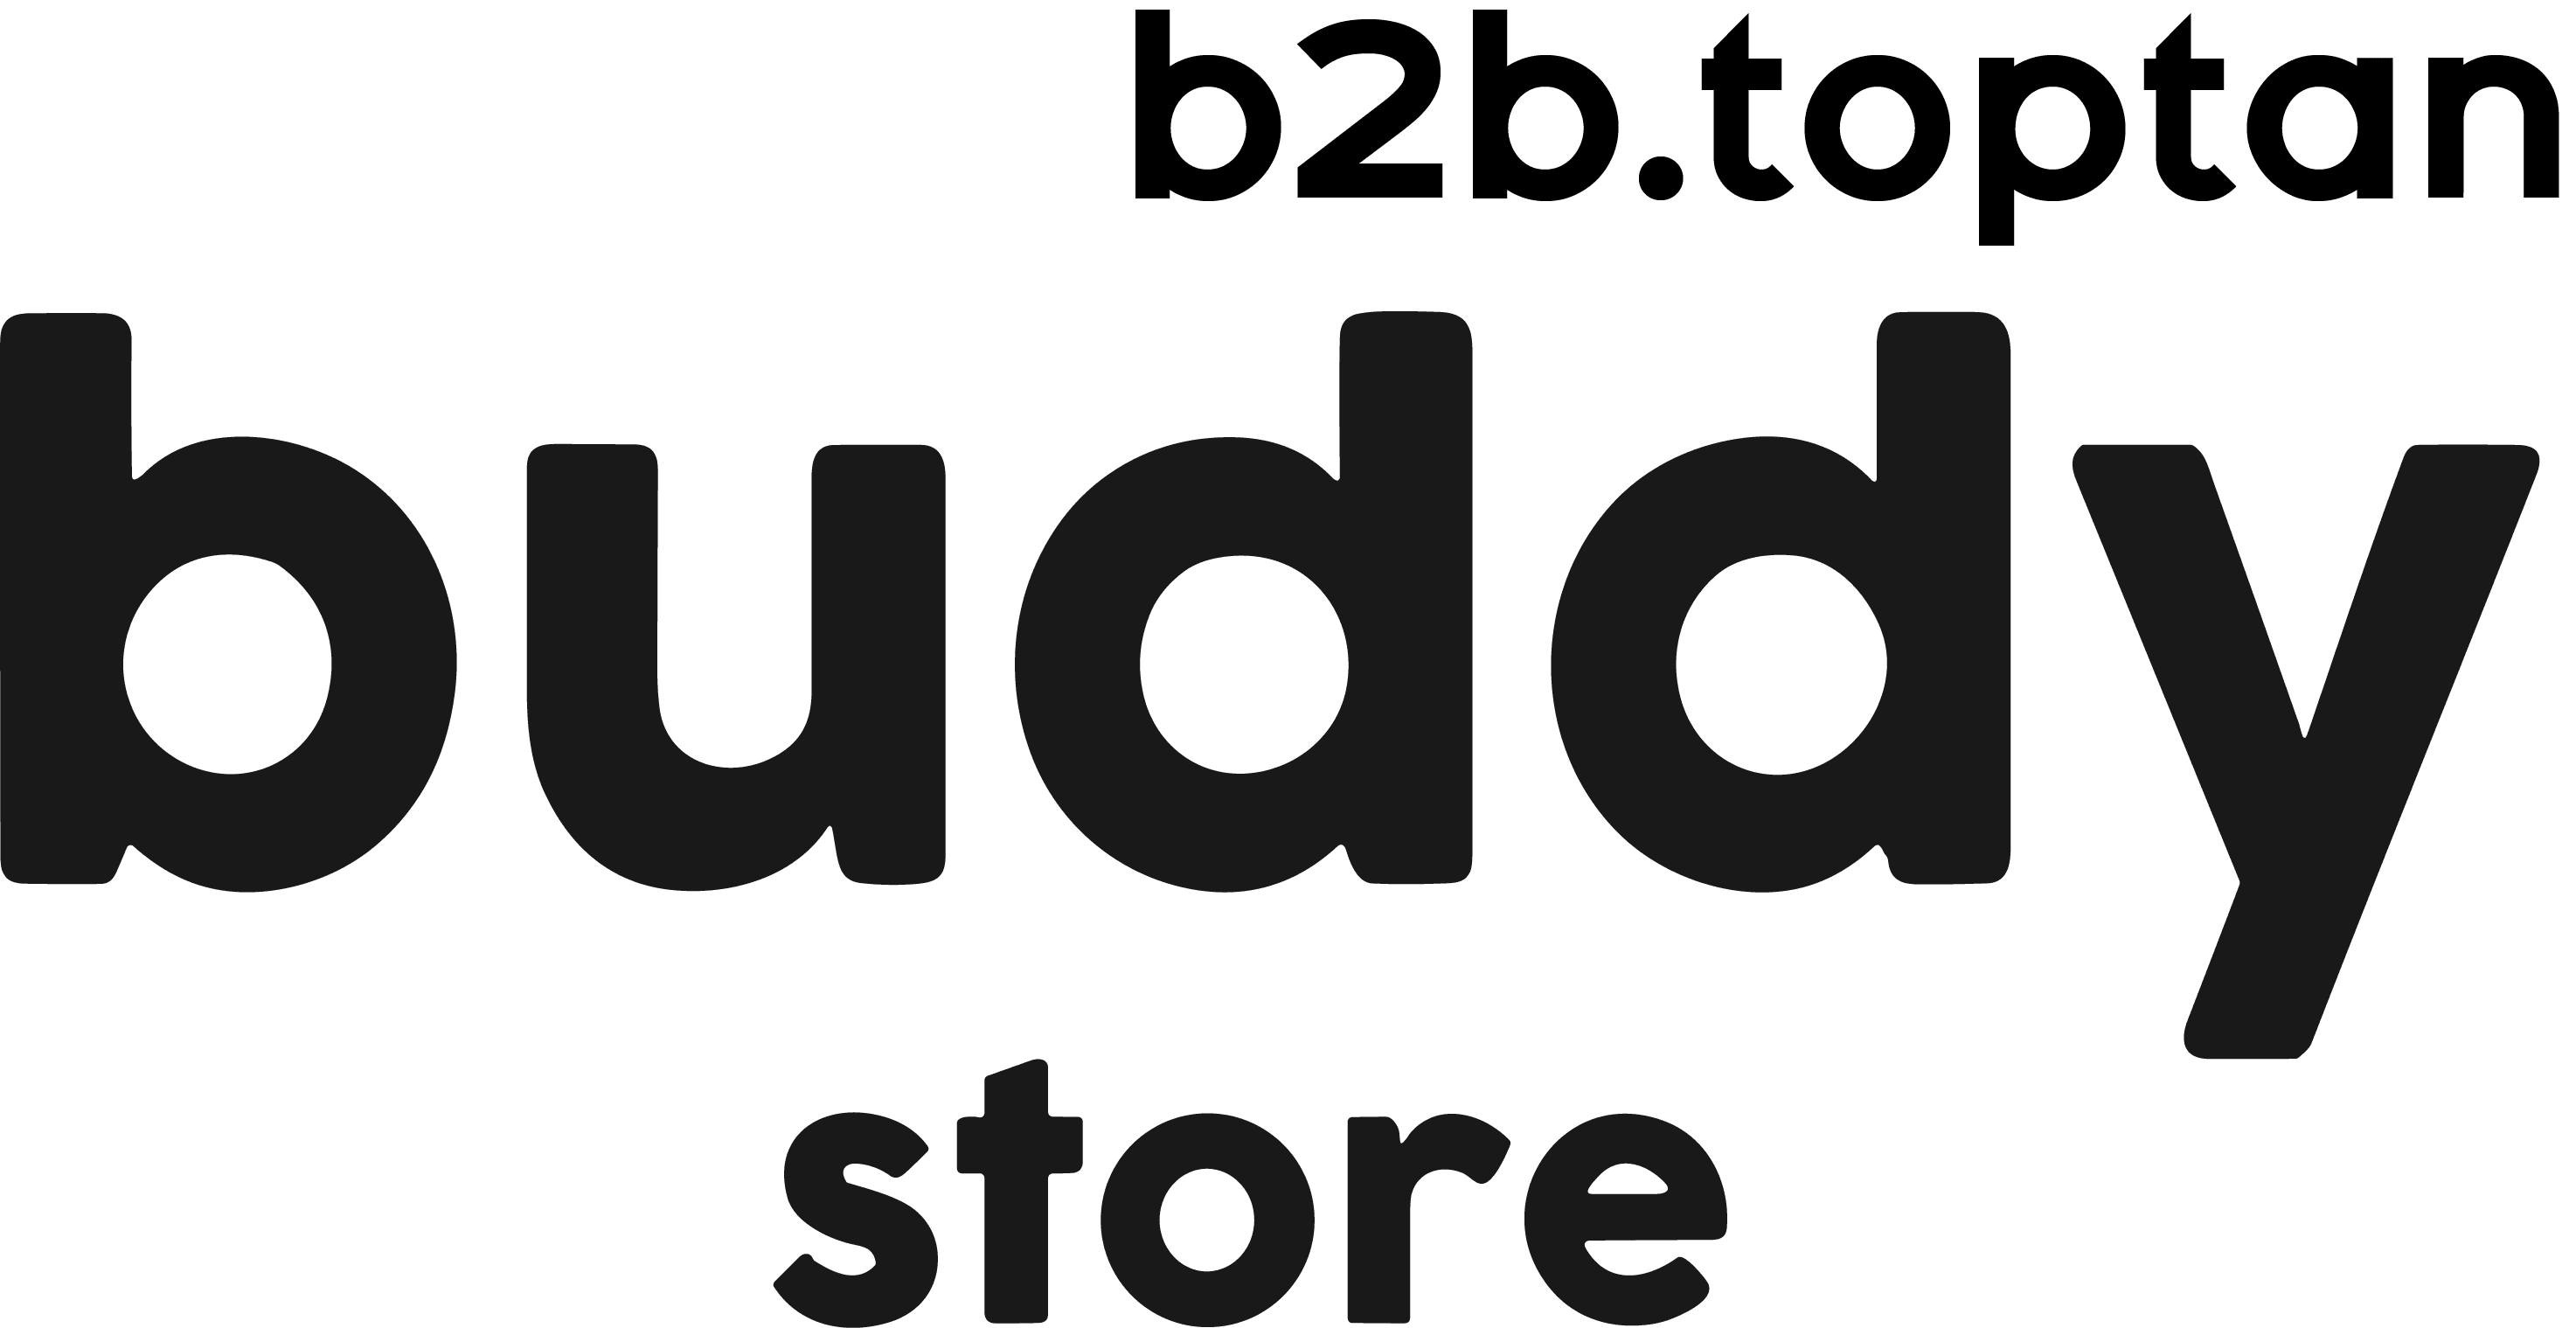 Buddy Store